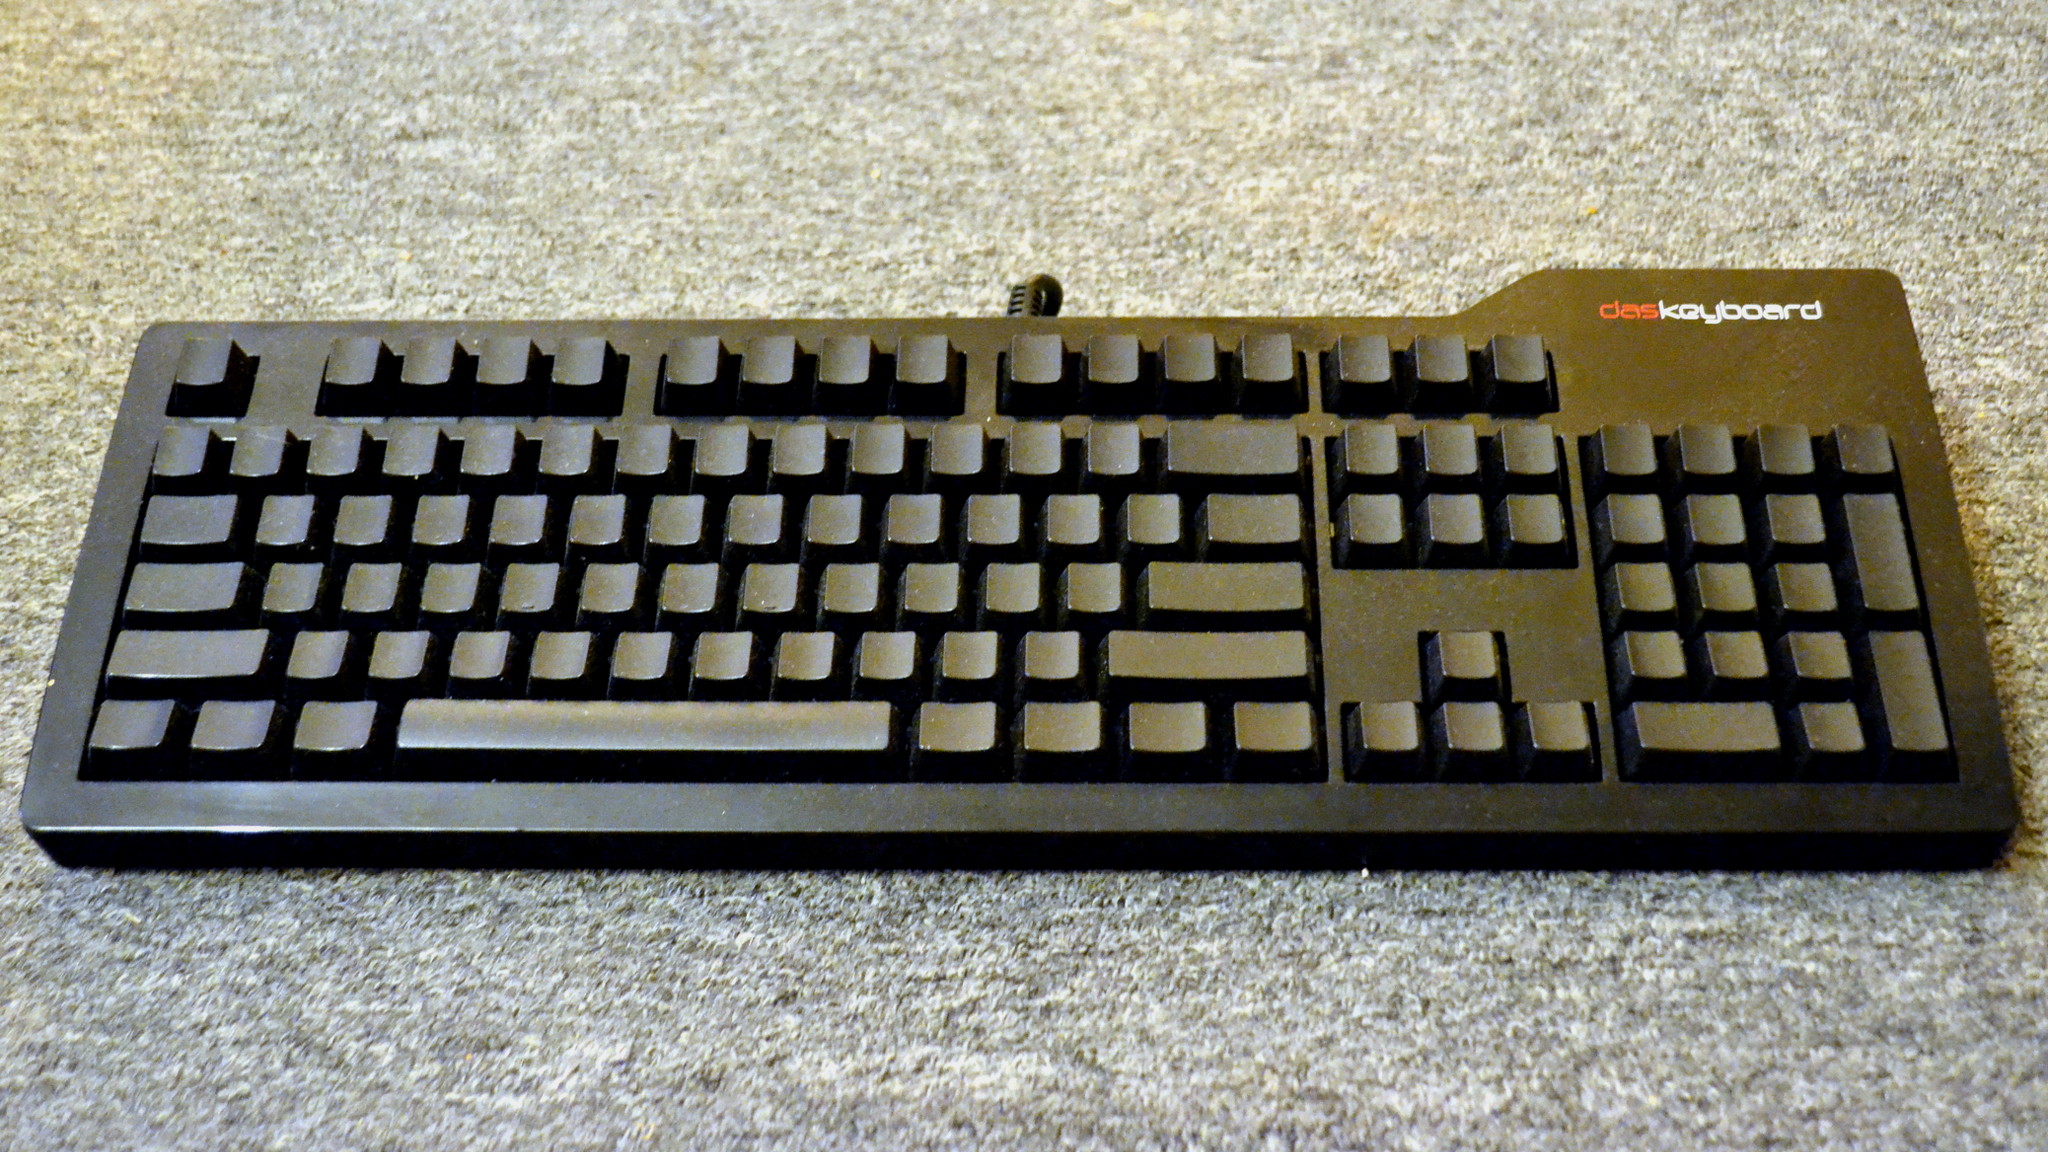 Das Keyboard Model S Ultimate